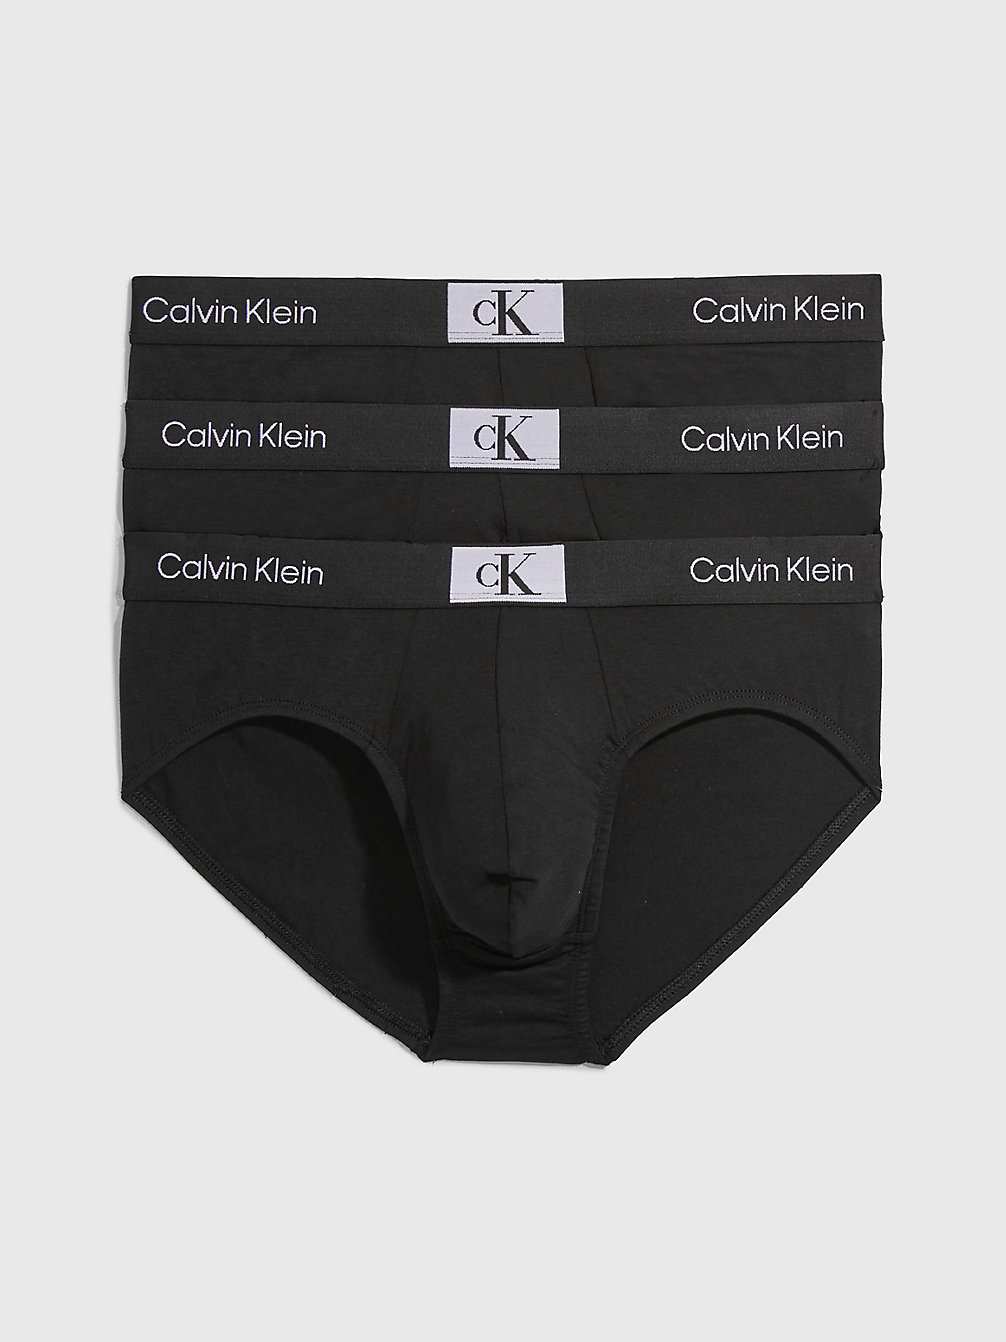 BLACK/BLACK/BLACK Lot De 3 Boxers Longs - Ck96 undefined hommes Calvin Klein